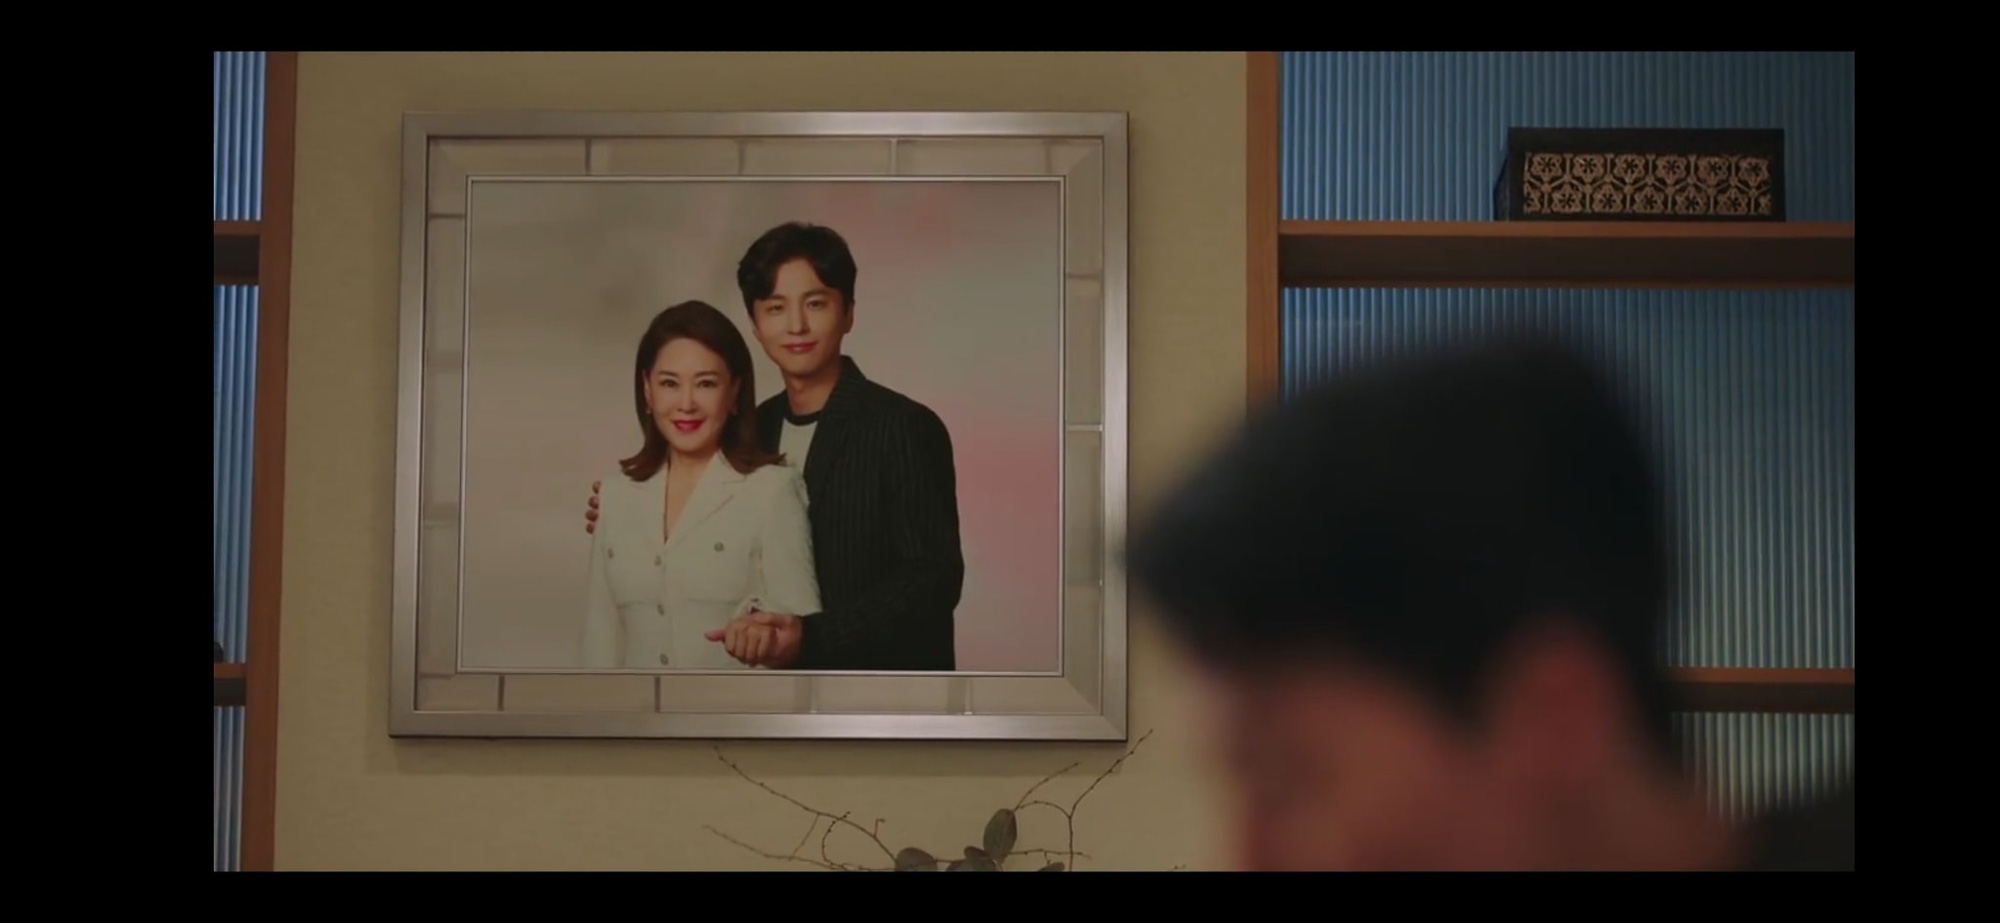 Lộ hint Song Hye Kyo không phải chị dâu hụt của Jang Ki Yong, may quá phim đỡ mùi loạn luân rồi - Ảnh 3.